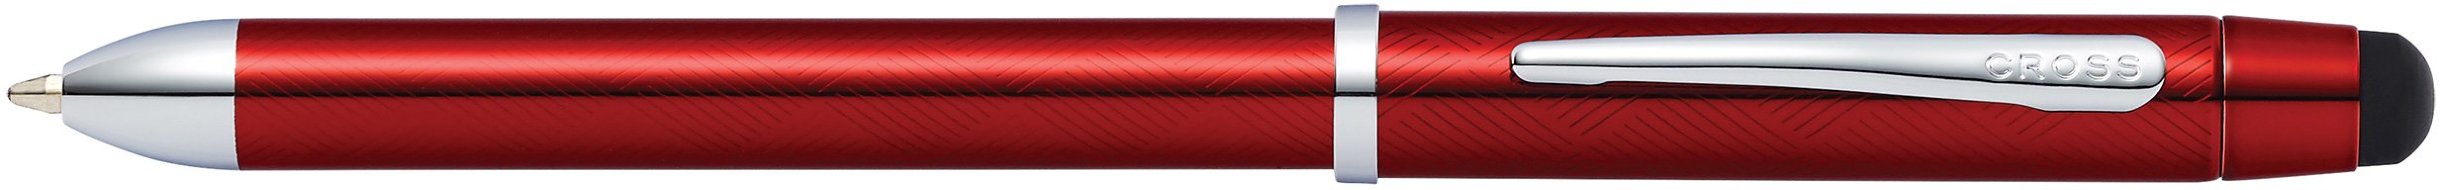 Шариковая ручка двухцветная и механический карандаш Cross Tech3+ Engraved Translucent Red